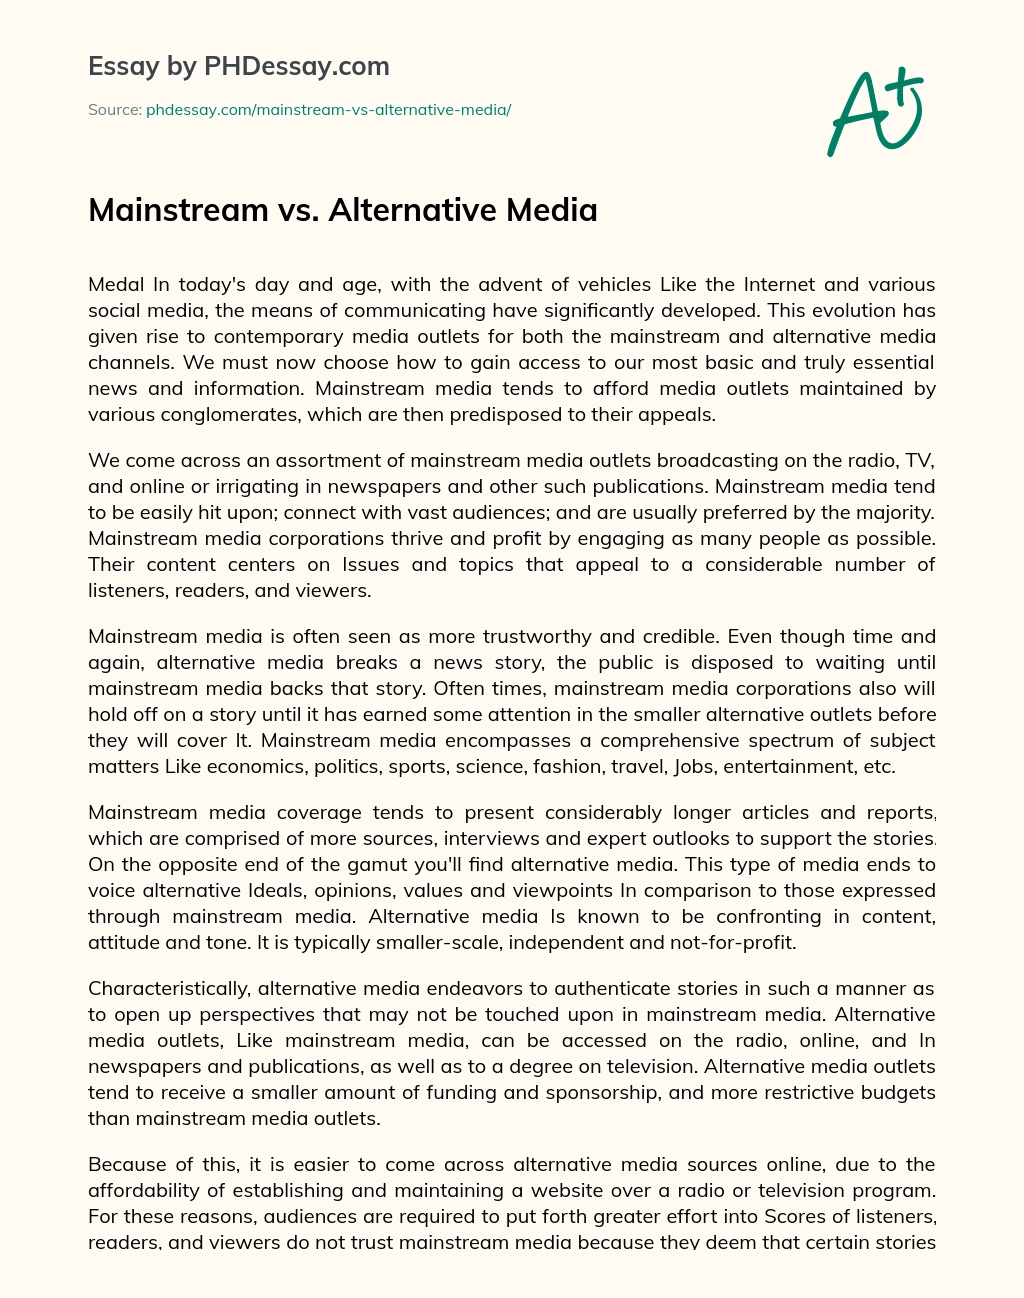 Mainstream vs. Alternative Media essay